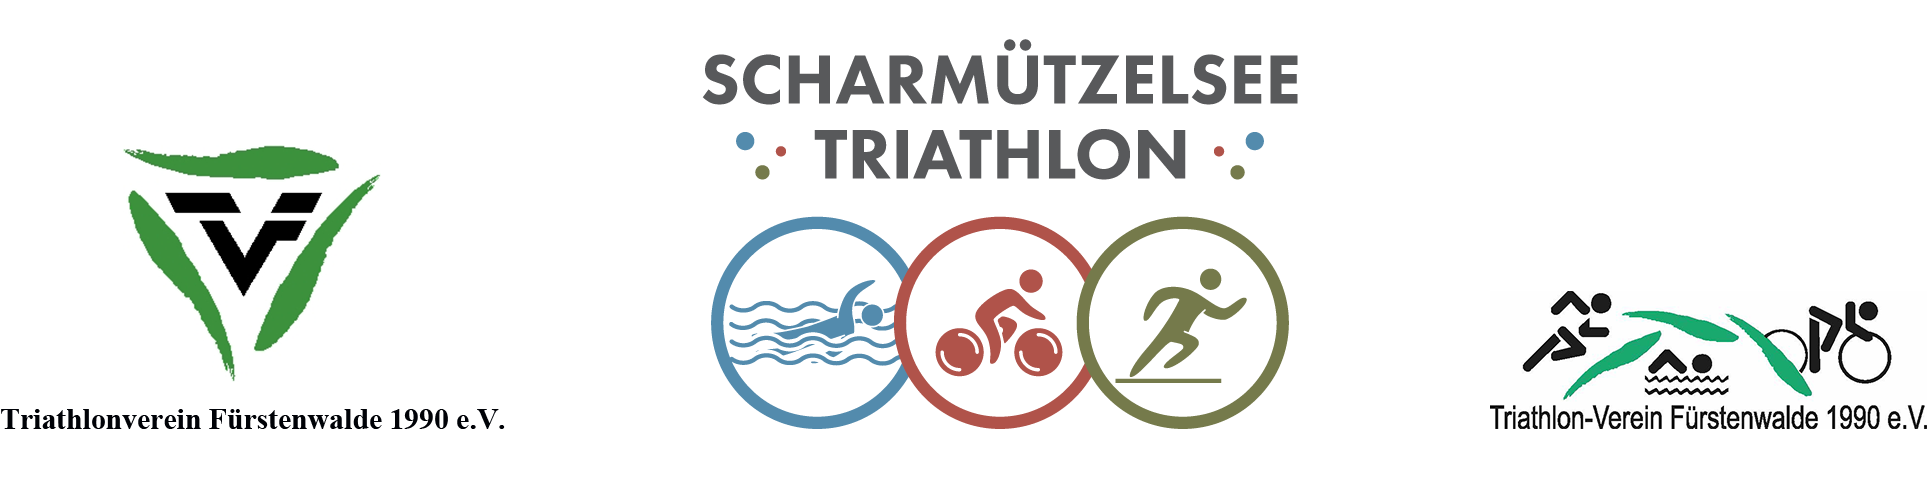 Scharmützelsee Triathlon